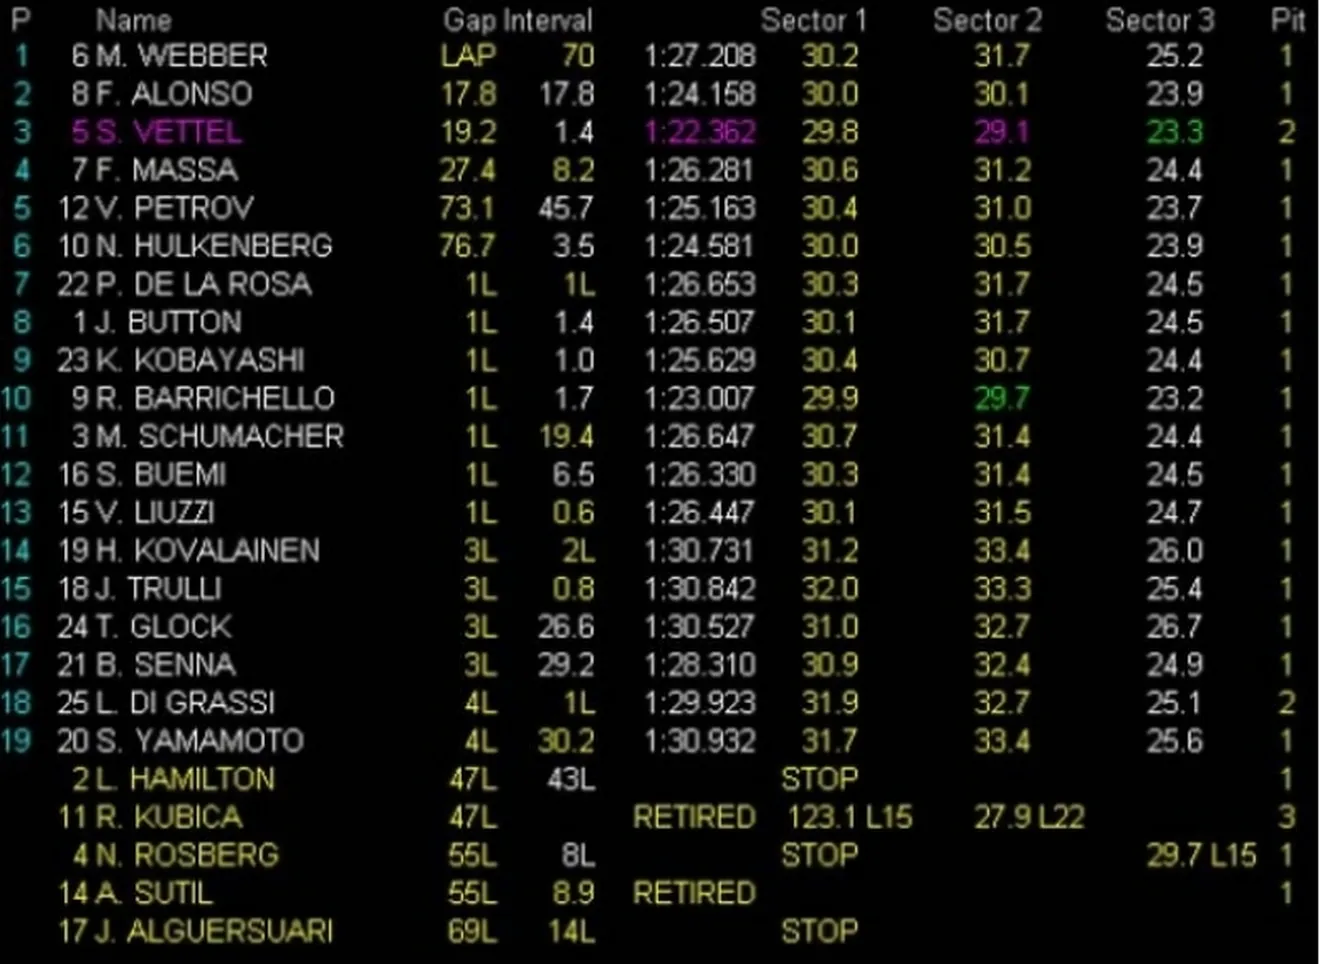 Increíble victoria de Webber, Alonso segundo